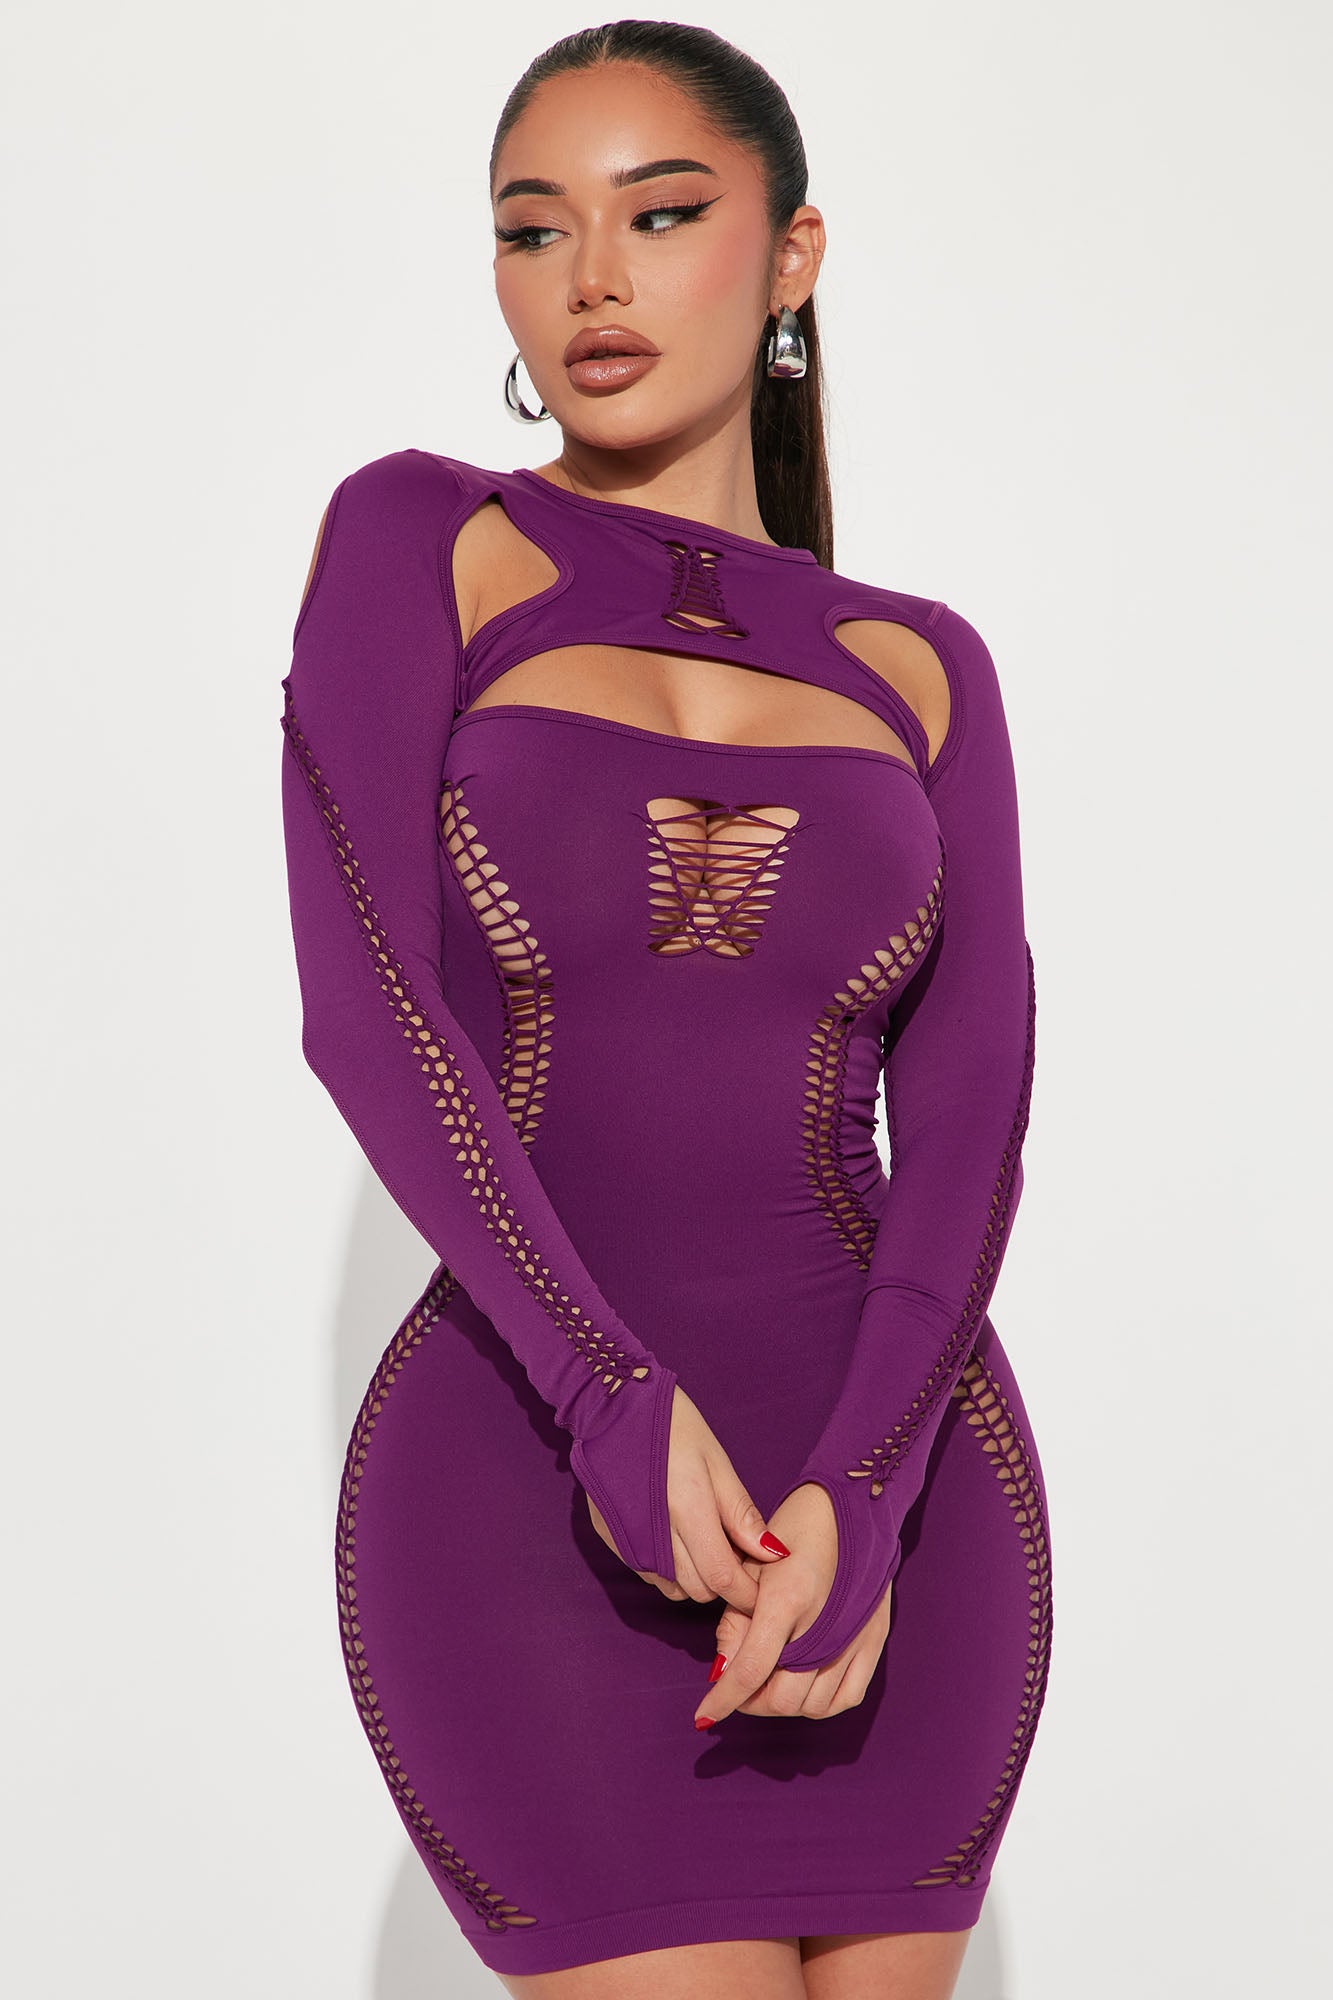 Next Seamless Mini Dress - Purple